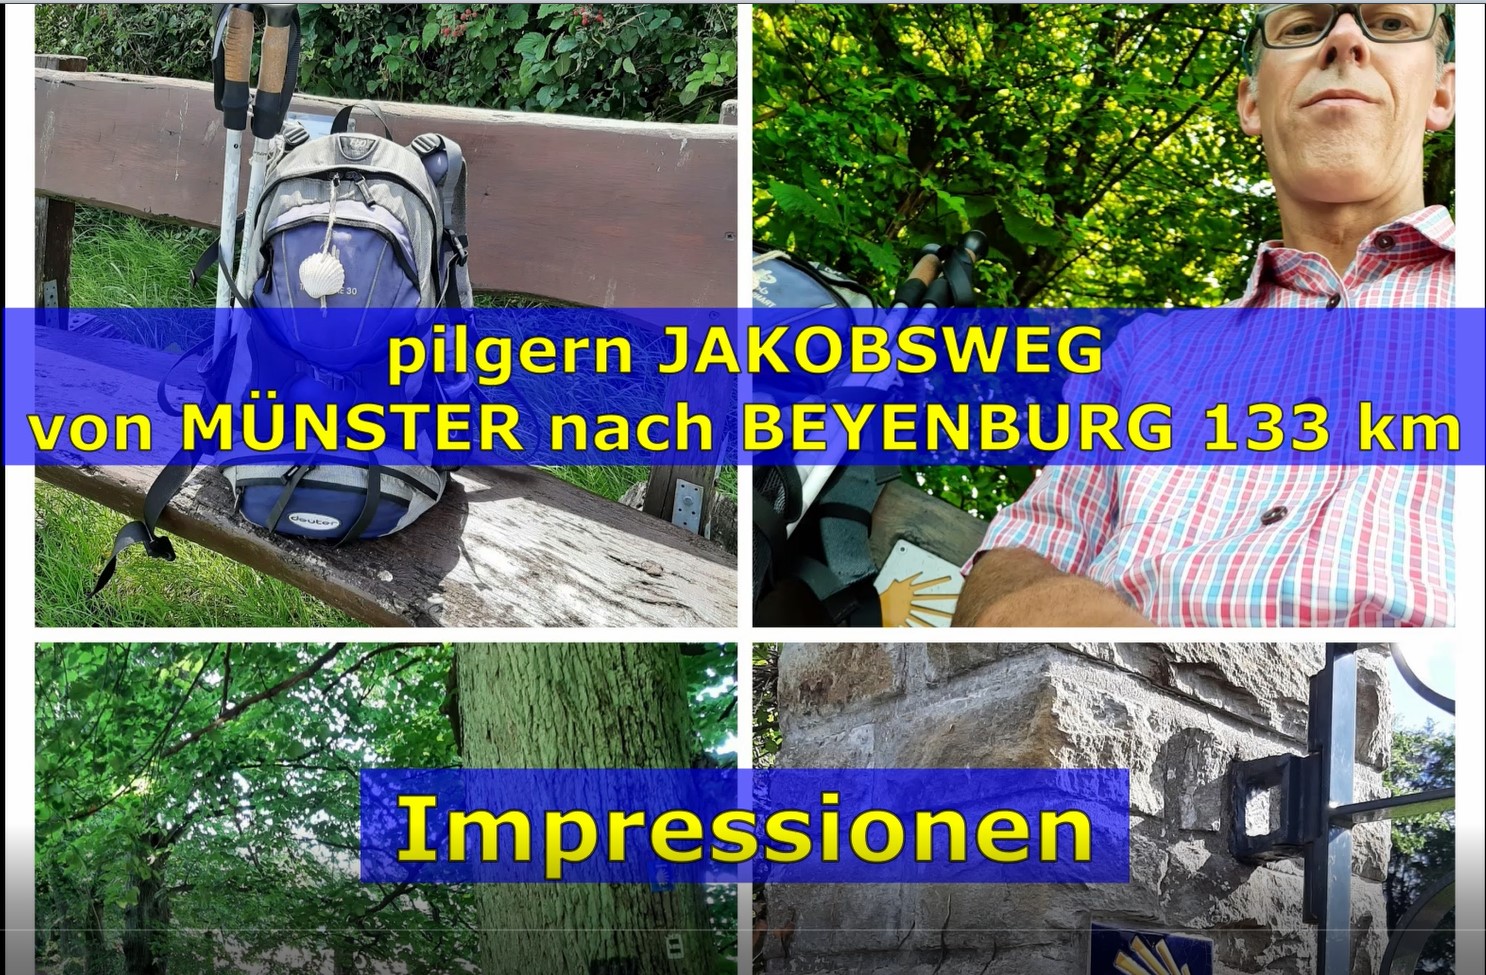 Jakobsweg von Münster nach Beyenburg -Impressionen l FWSpass.de l Michael-Arthur Rieck